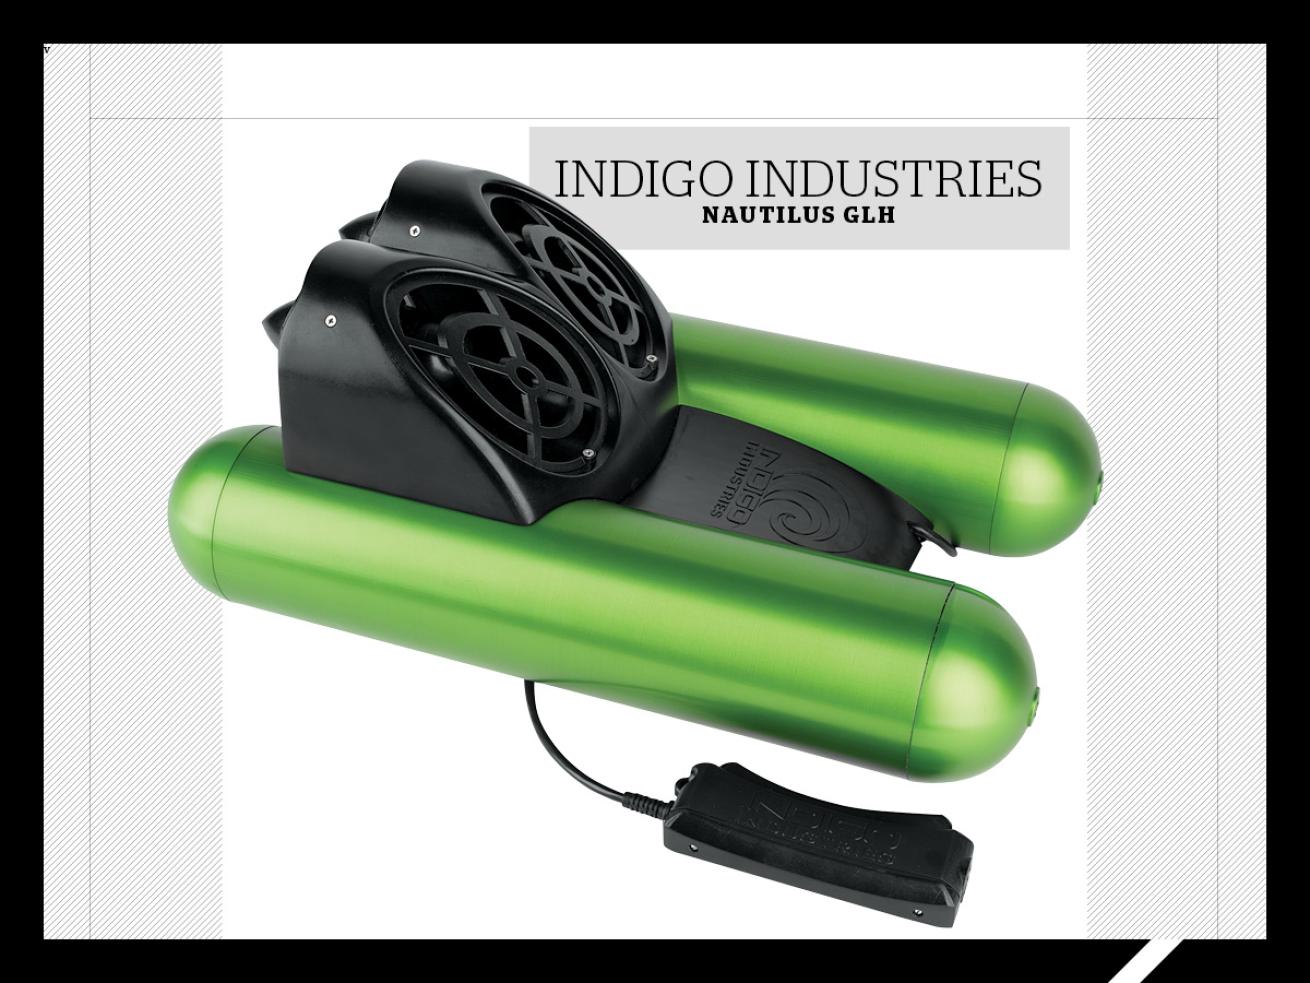 Indigo Industries Nautilus GLH DPV